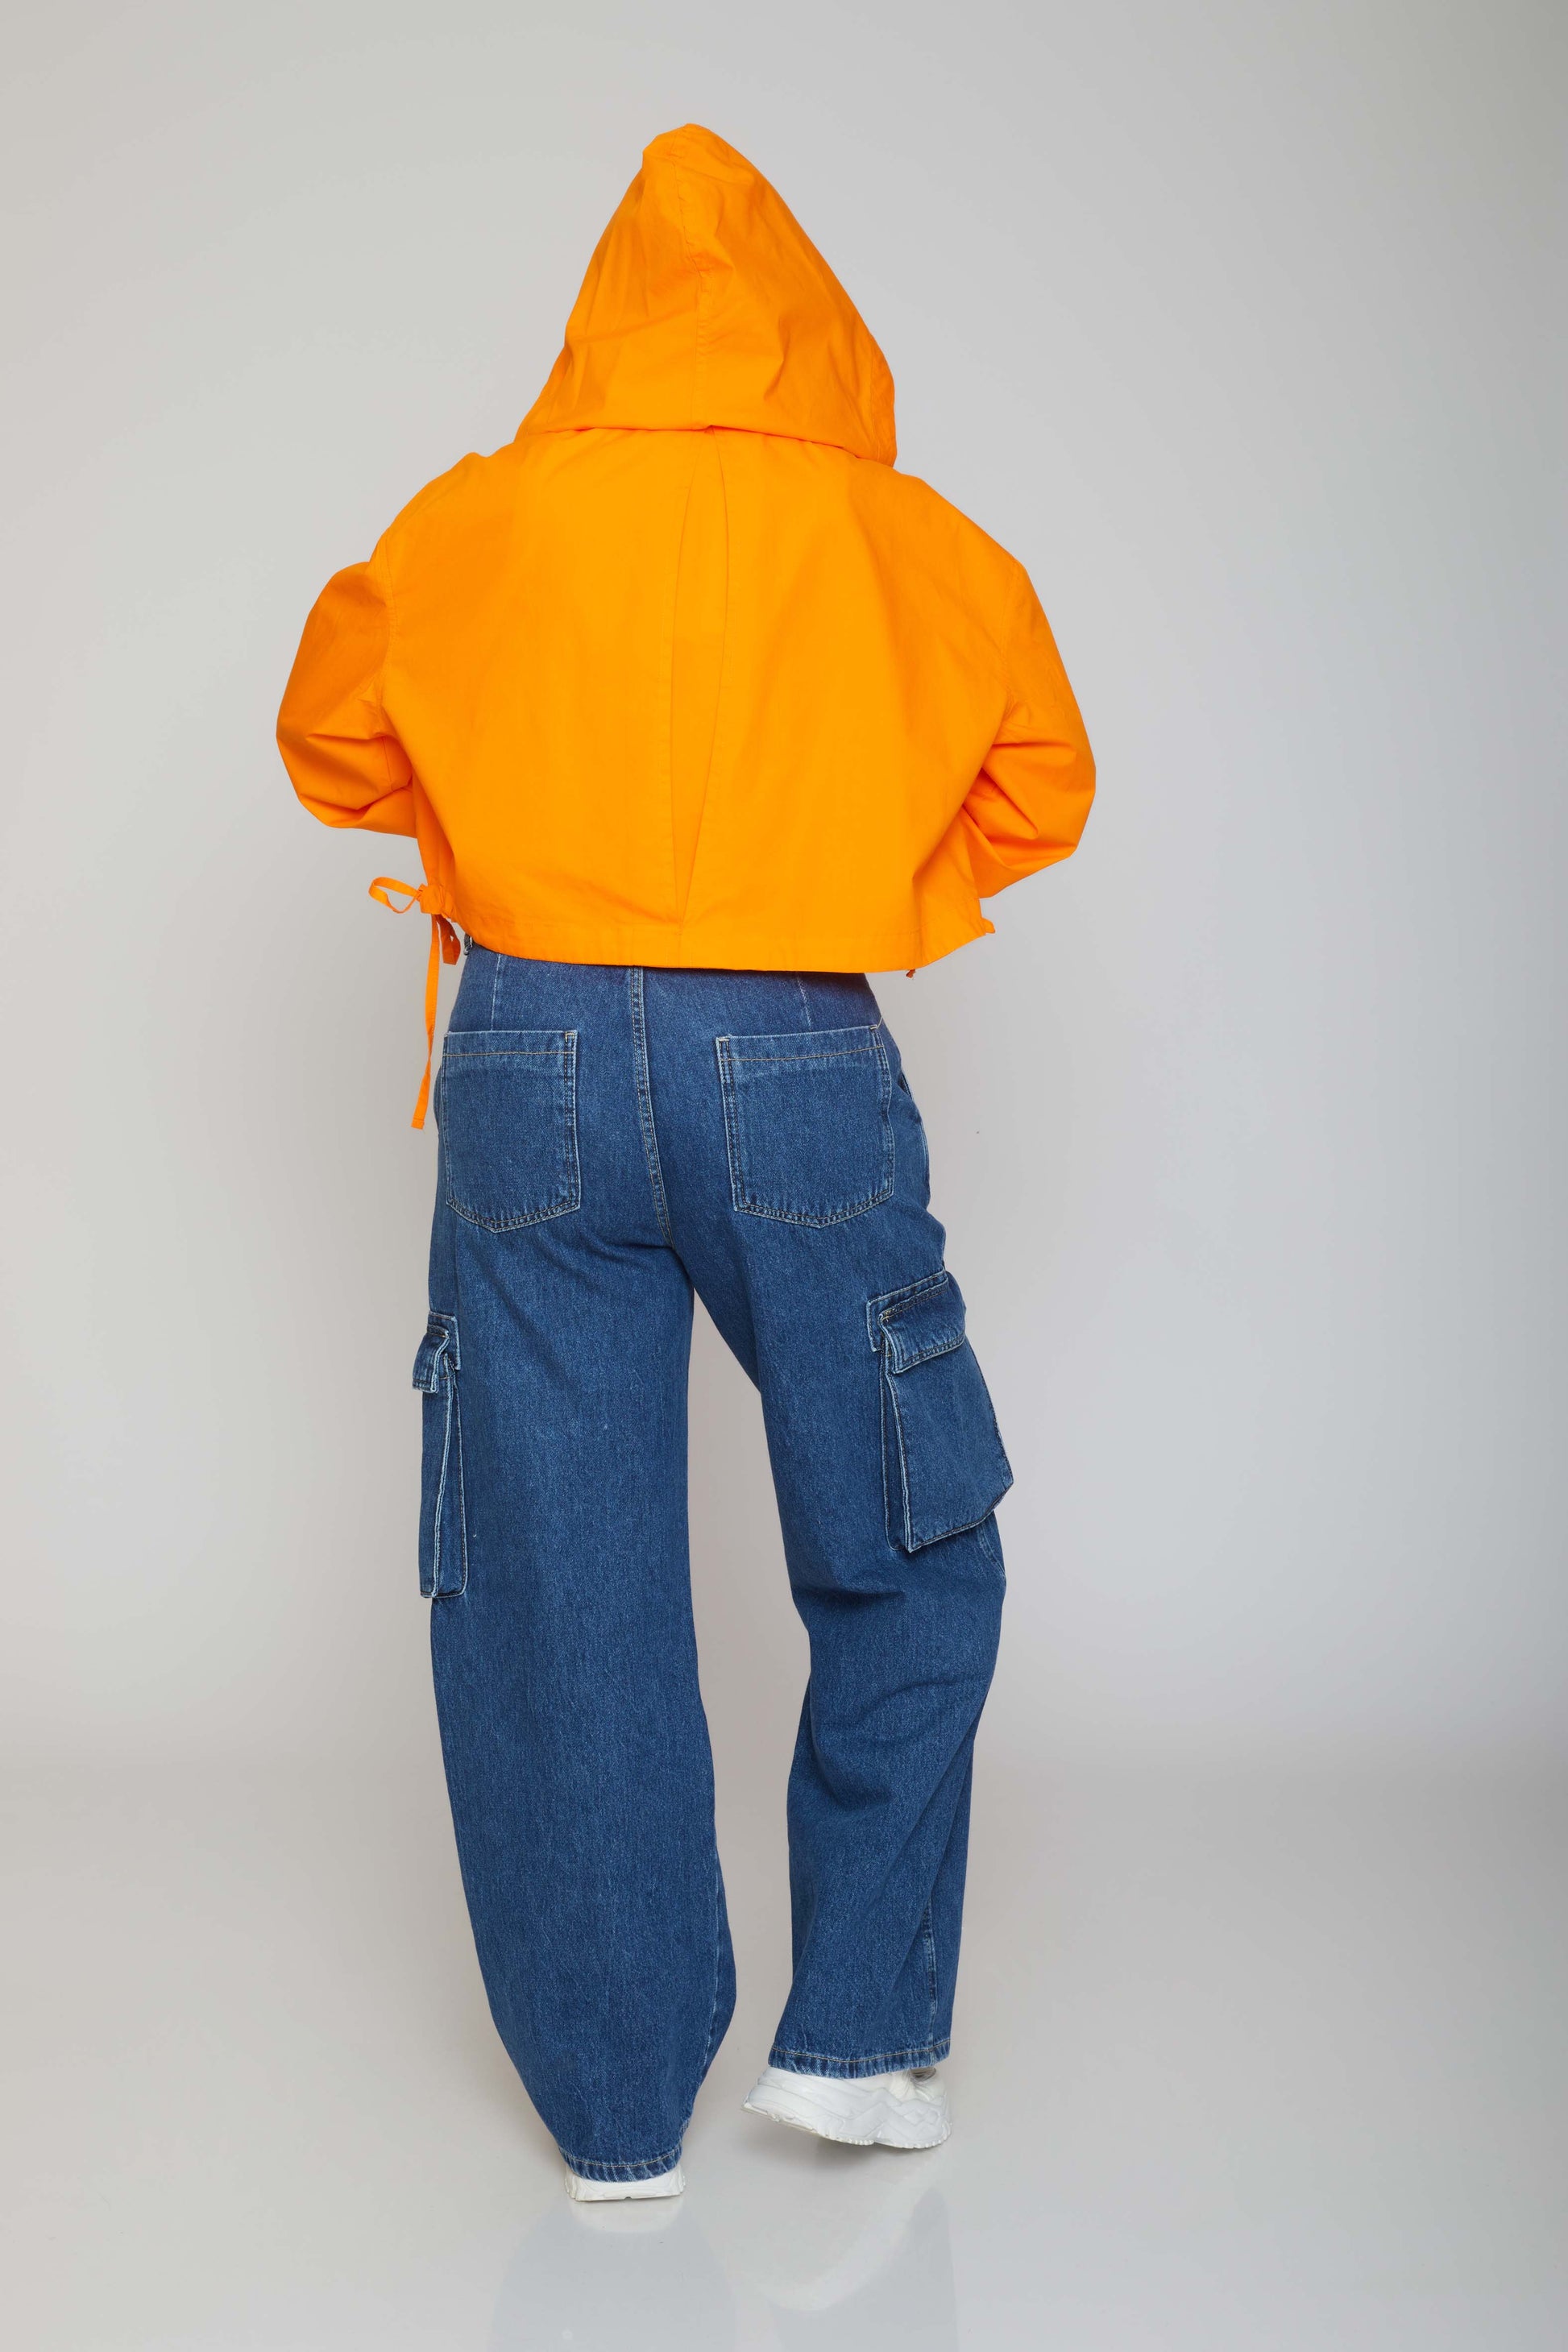 dj short jacket - orange